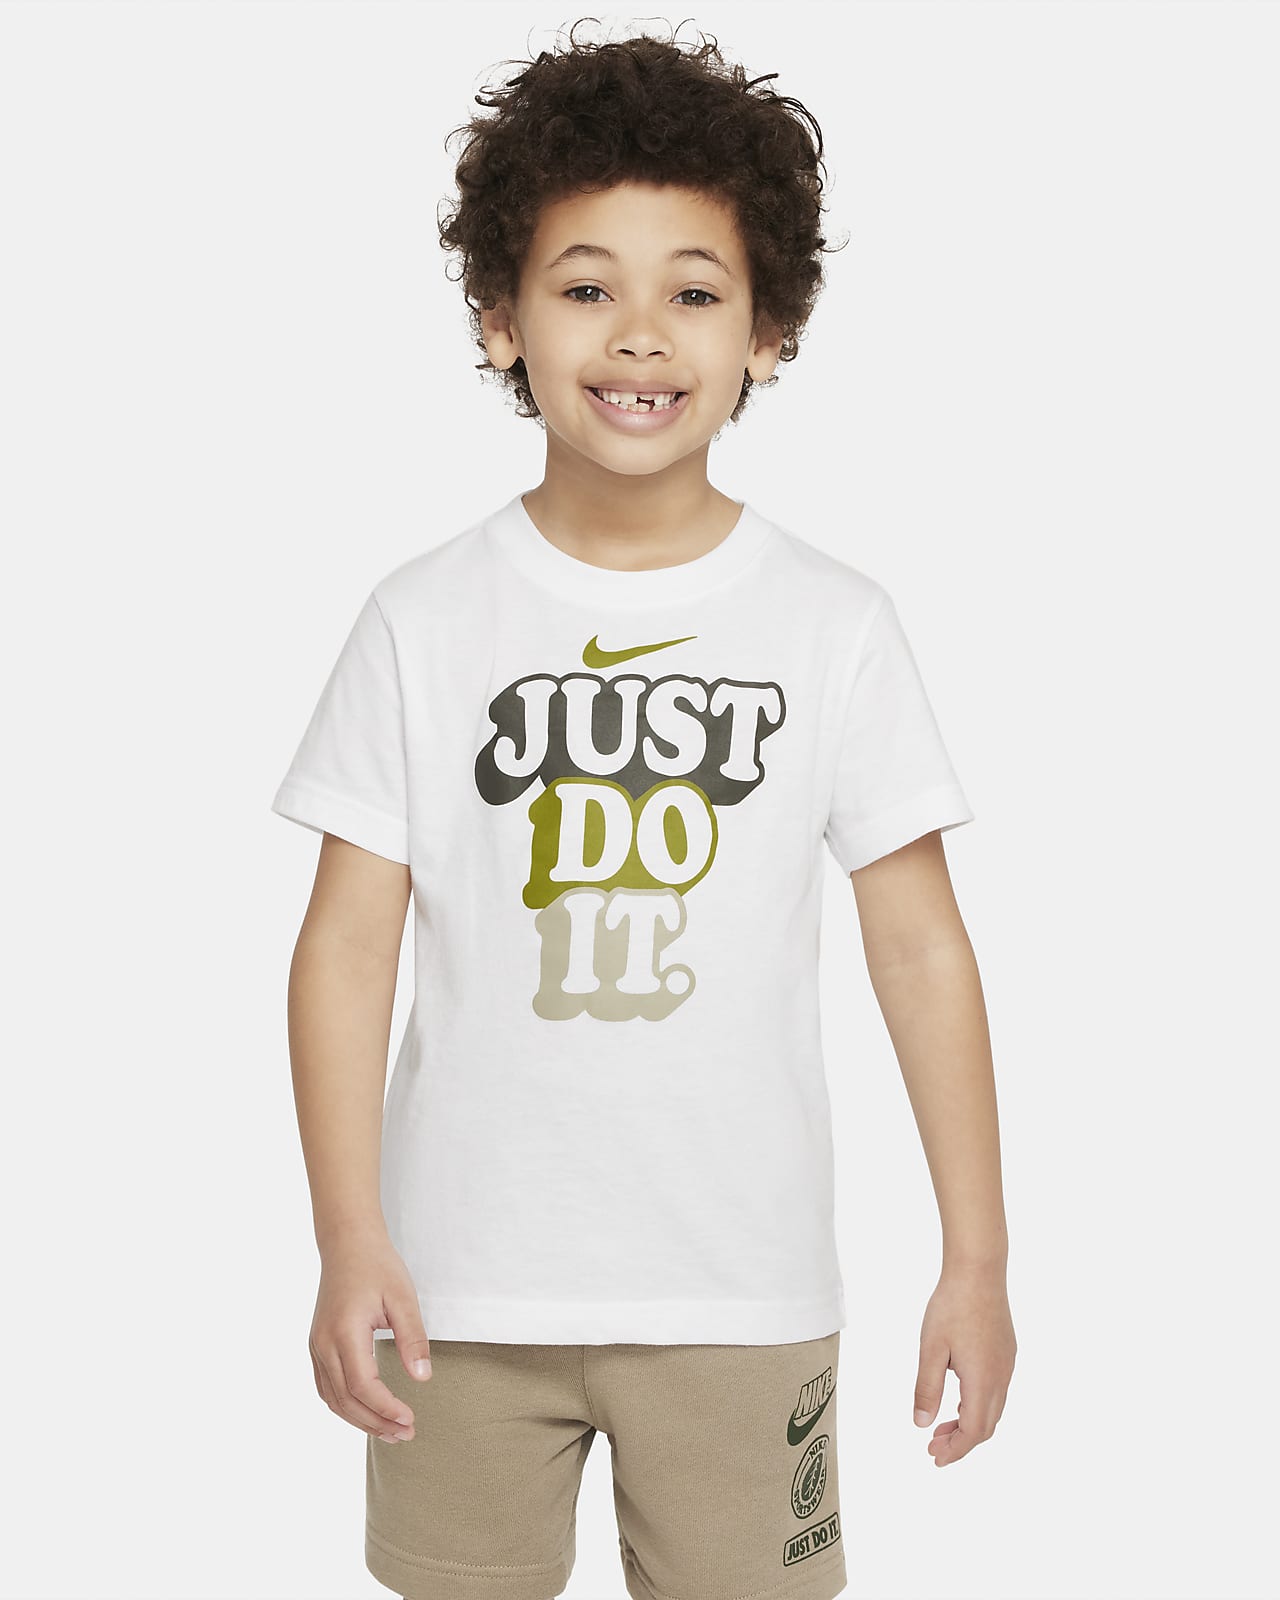 Nike "Just Do It" Camp Tee Little Kids' T-Shirt